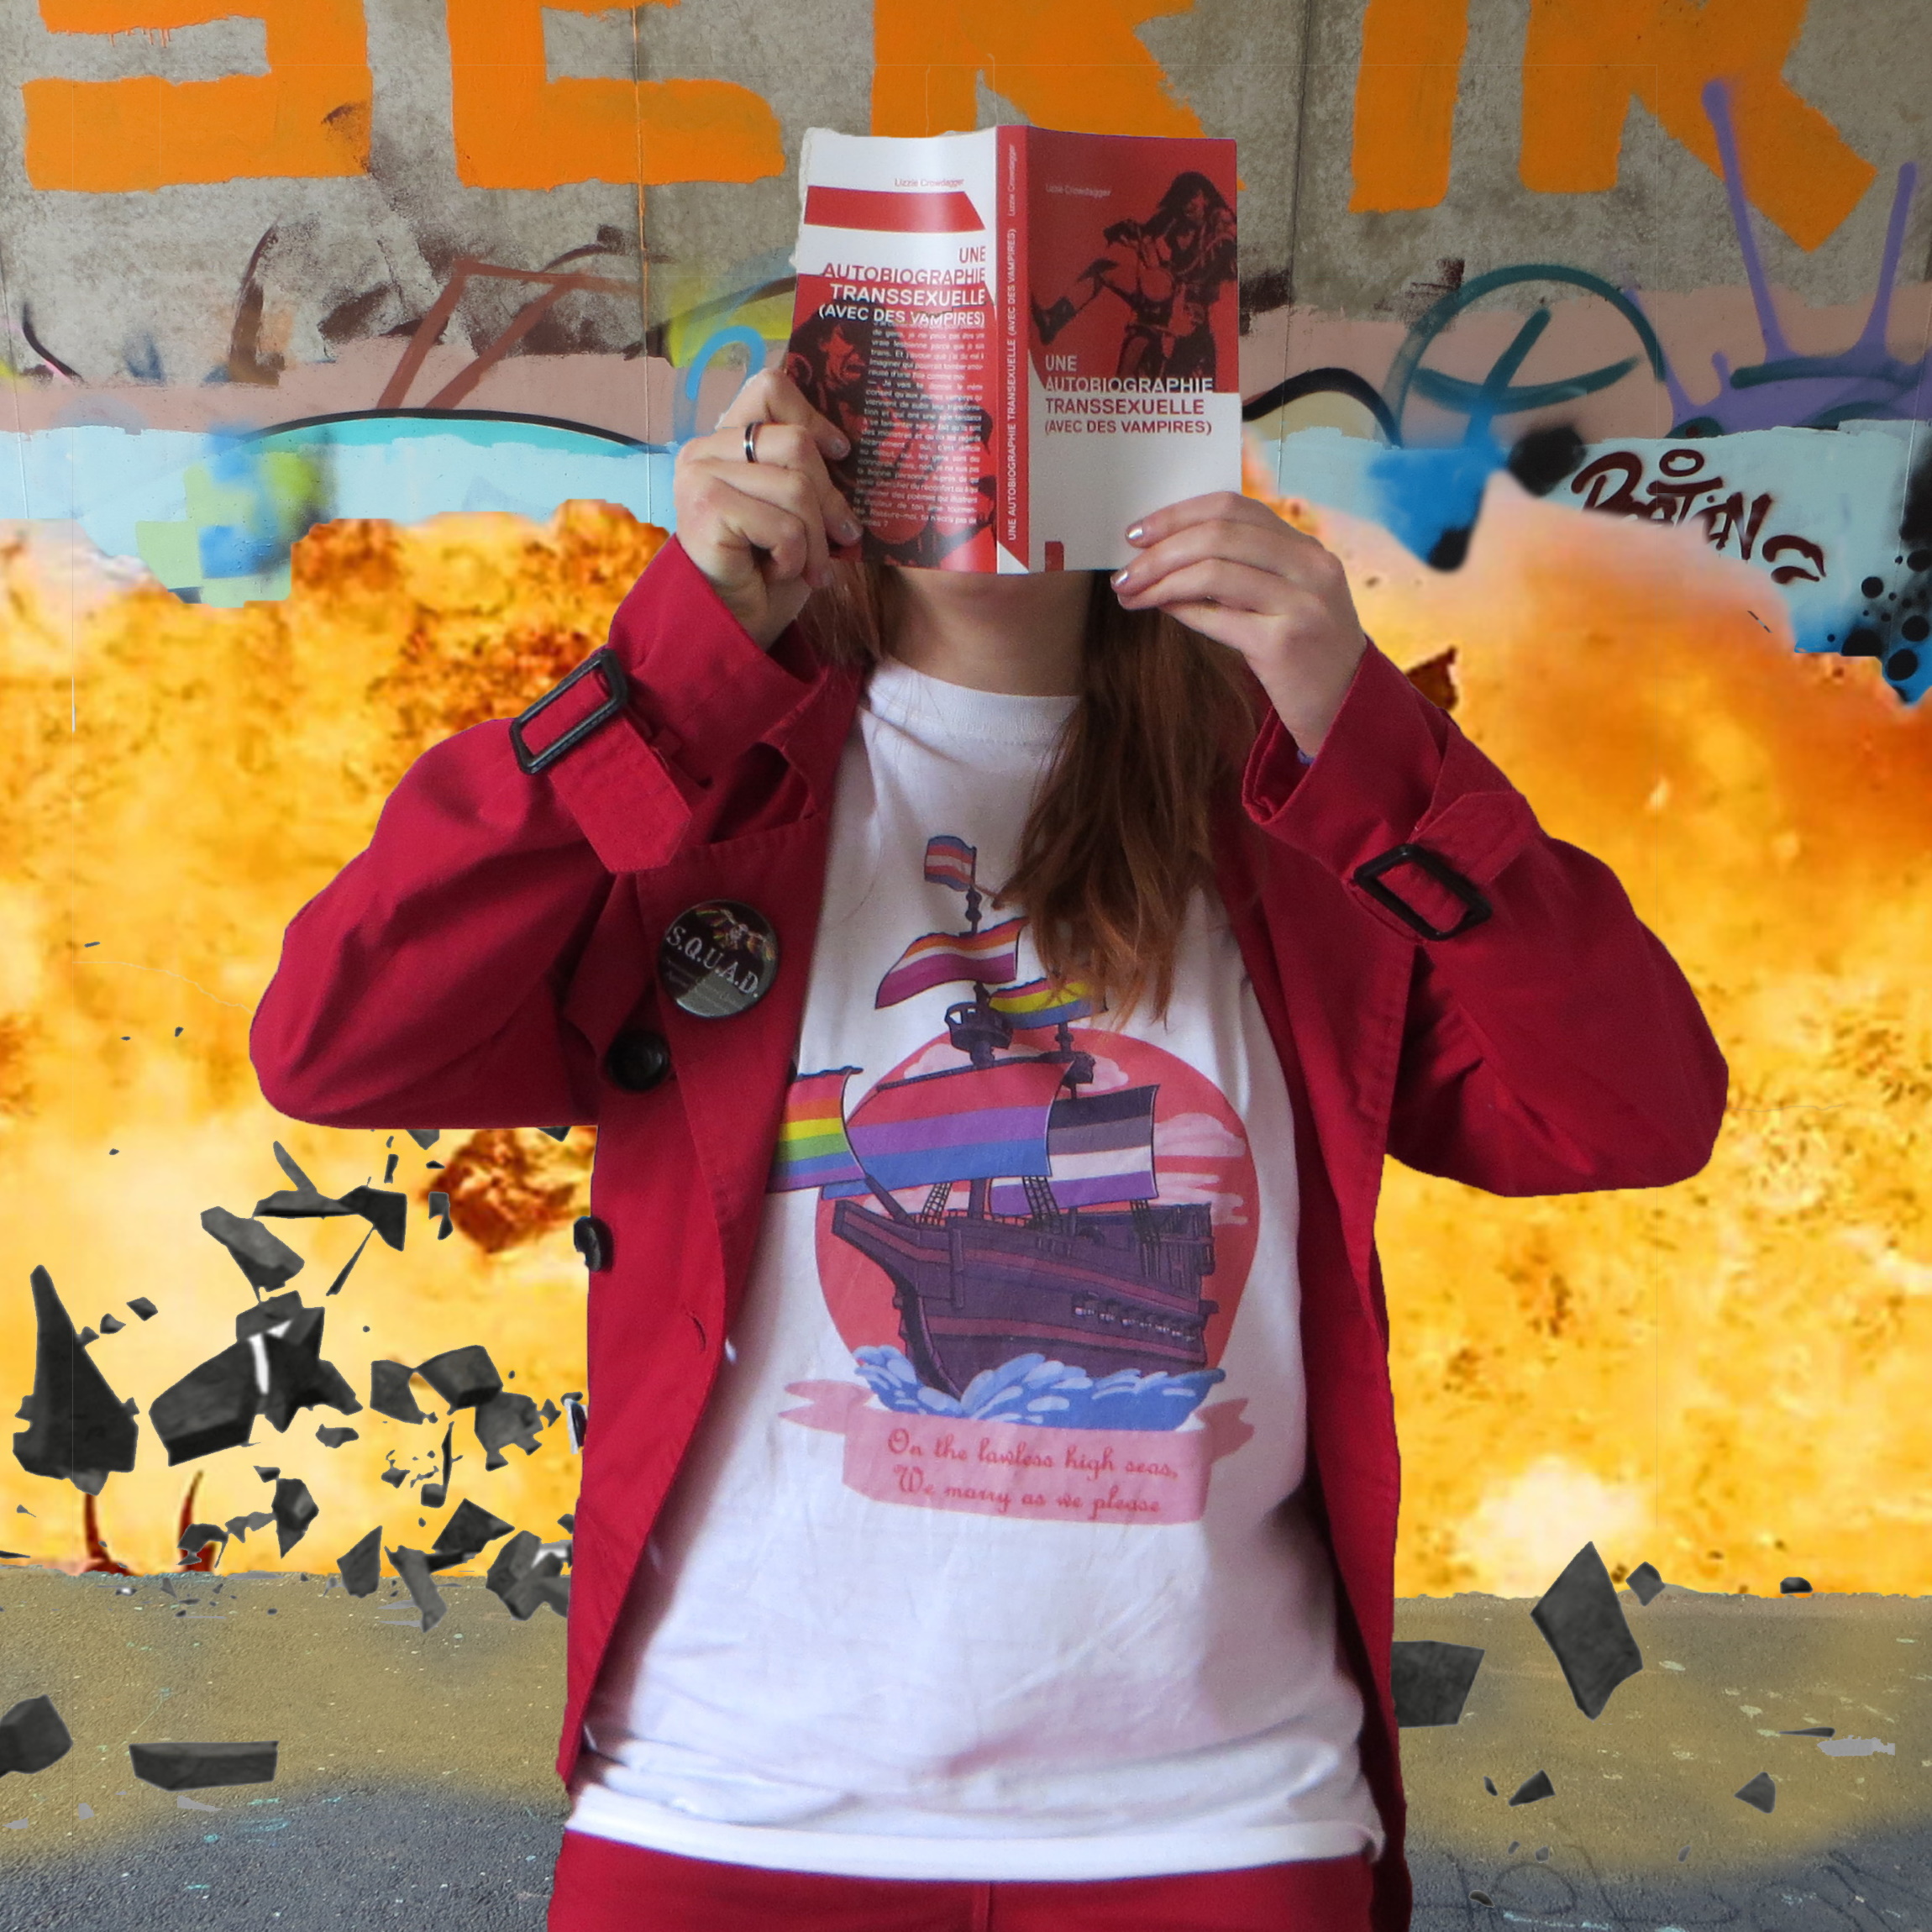 personne en t-shirt pirate queer et parka rouge lisant Une autobiographie transssexuelle devant un mur tagué qui explose